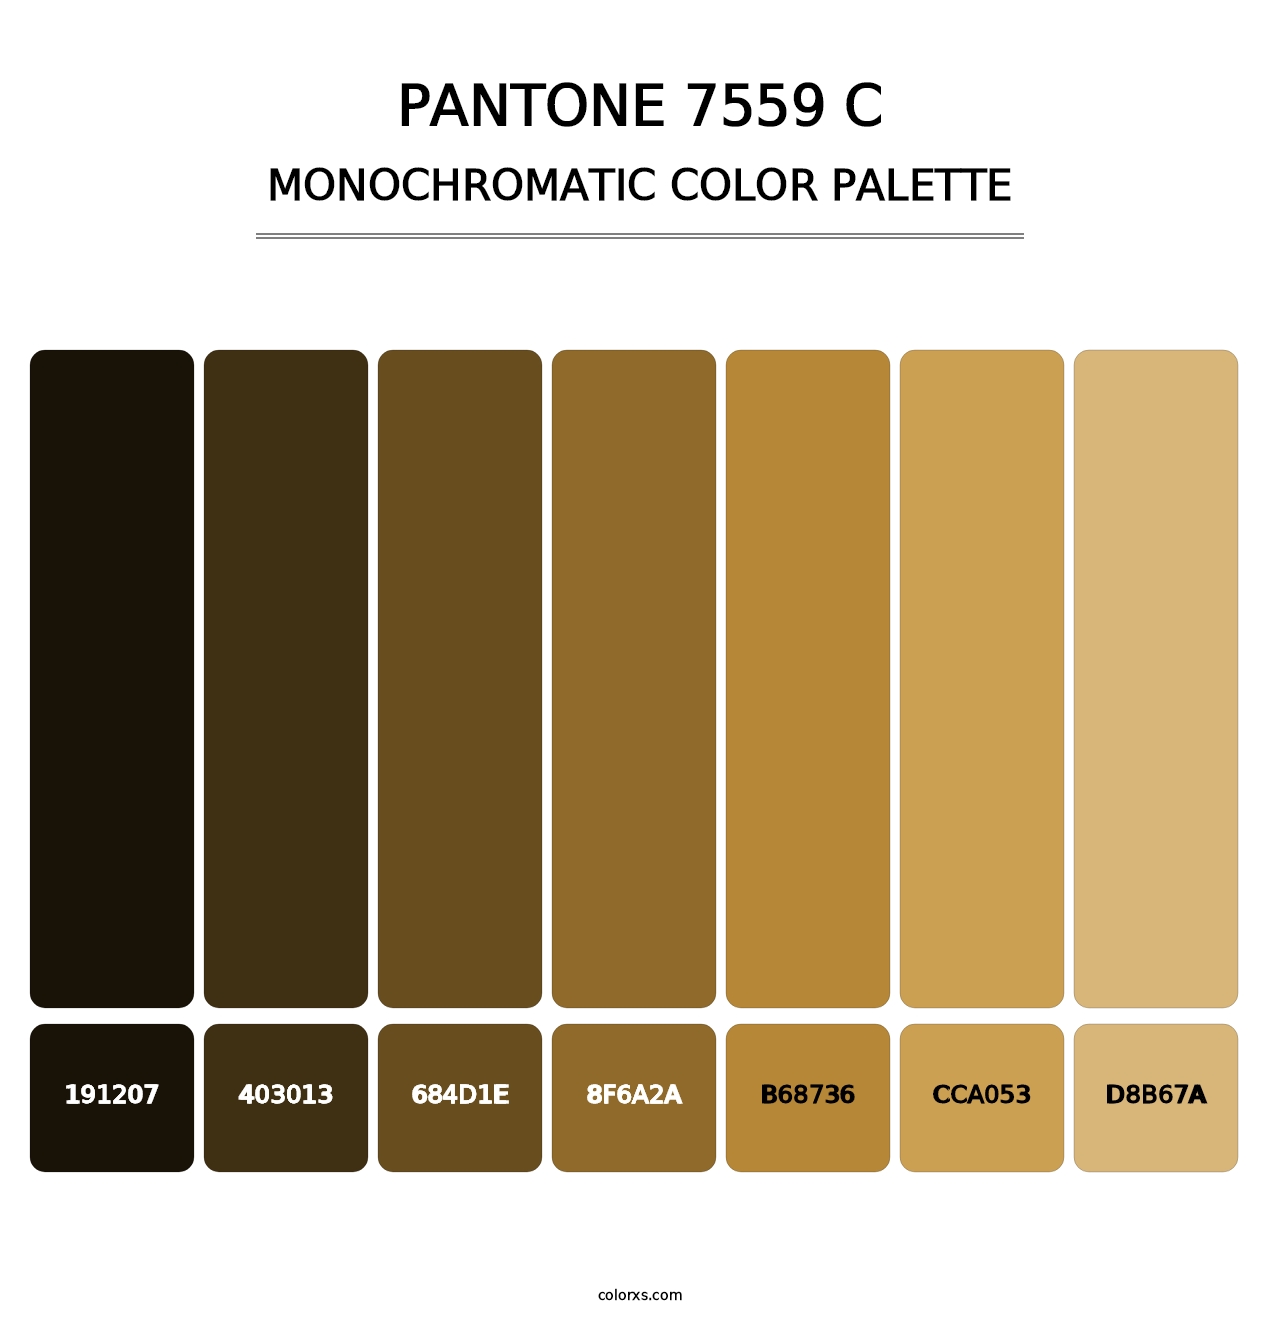 PANTONE 7559 C - Monochromatic Color Palette